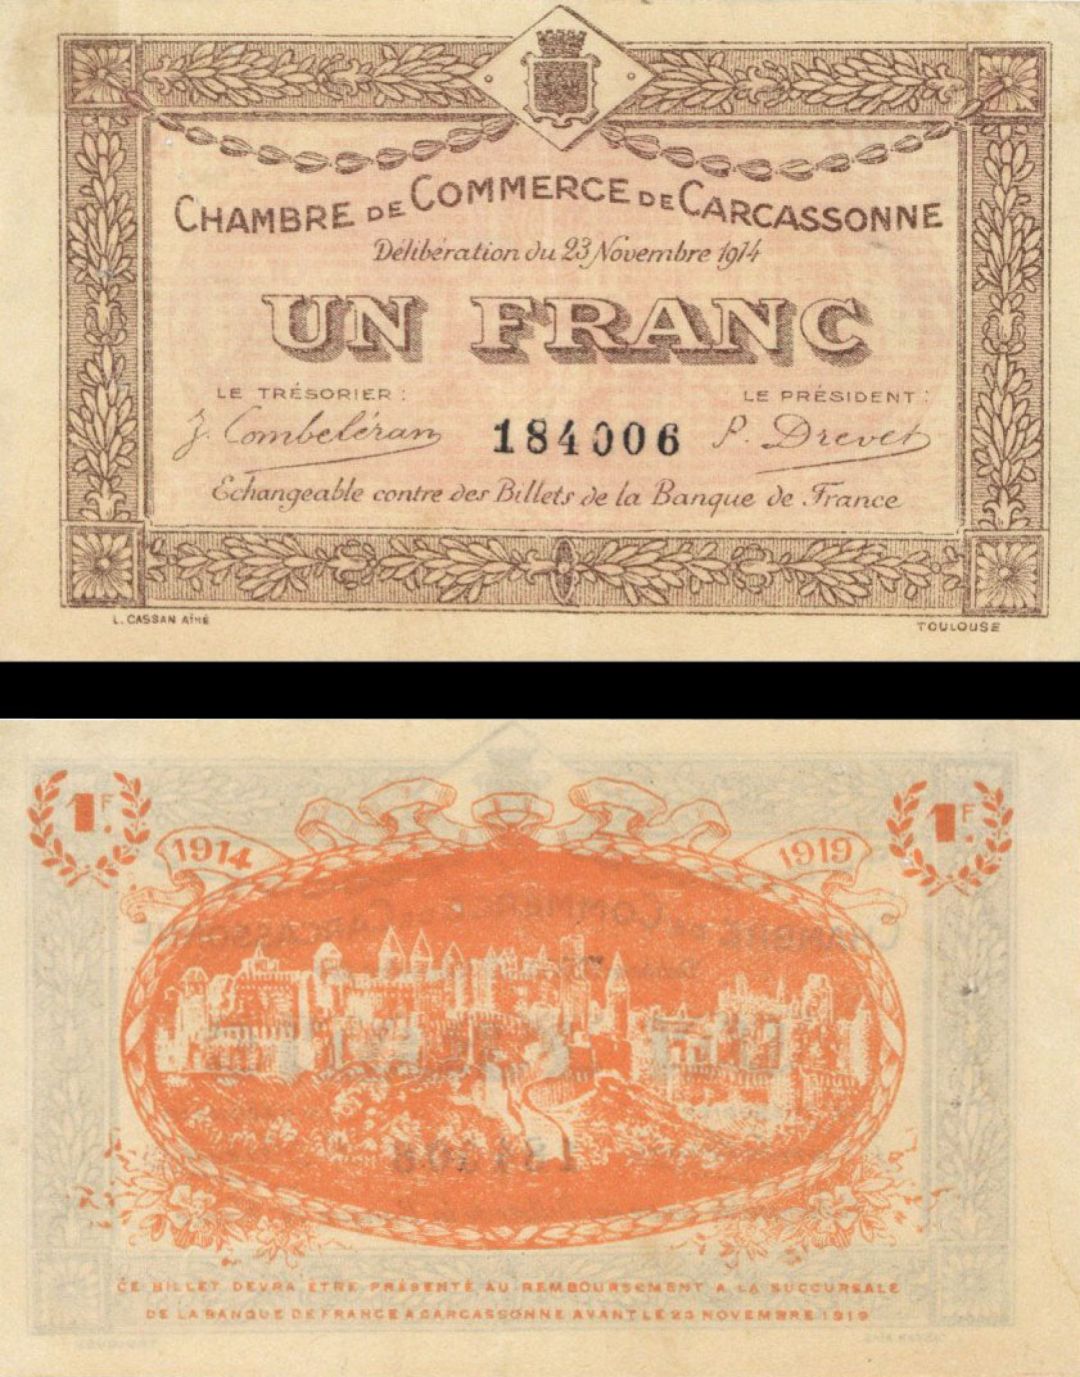 France, Notgeld - 1914, 1 Franc -  Foreign Paper Money